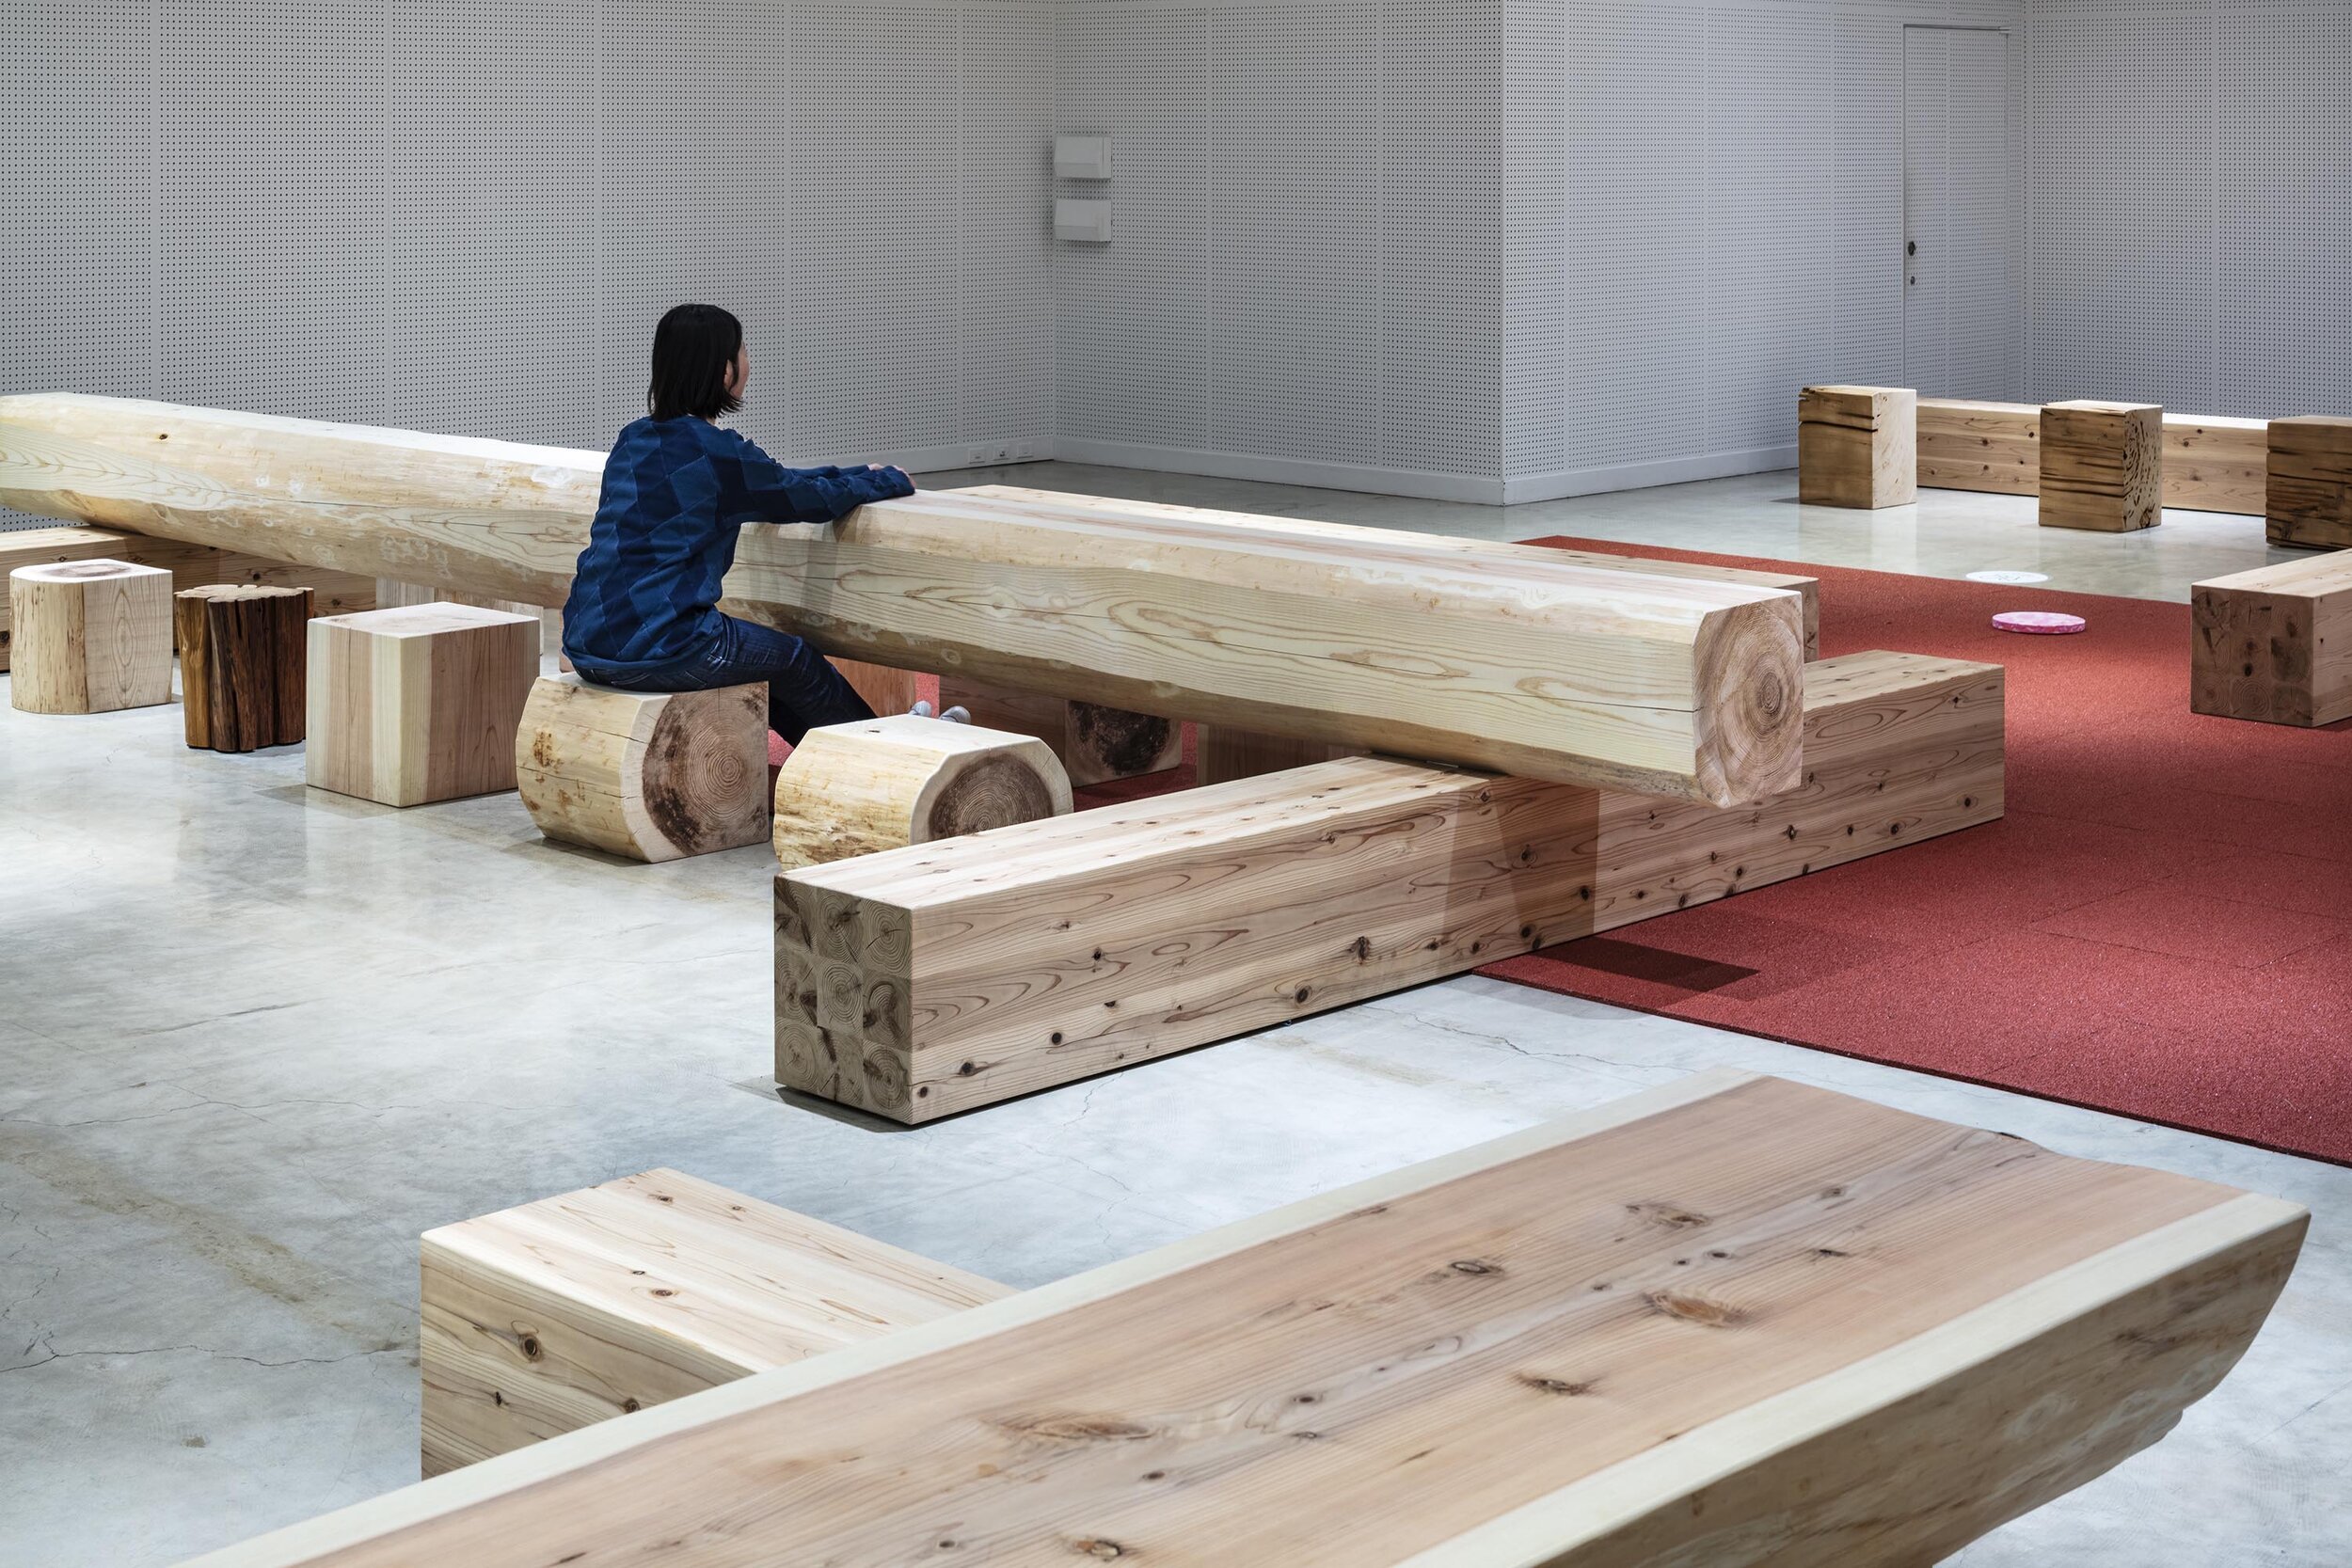  トラフ建築設計事務所 Torafu Architectsの鈴野浩一と禿真哉がインテリアデザインを手掛けた「丸太広場キトキ」。丸太はベンチやテーブルとして使うことができる 